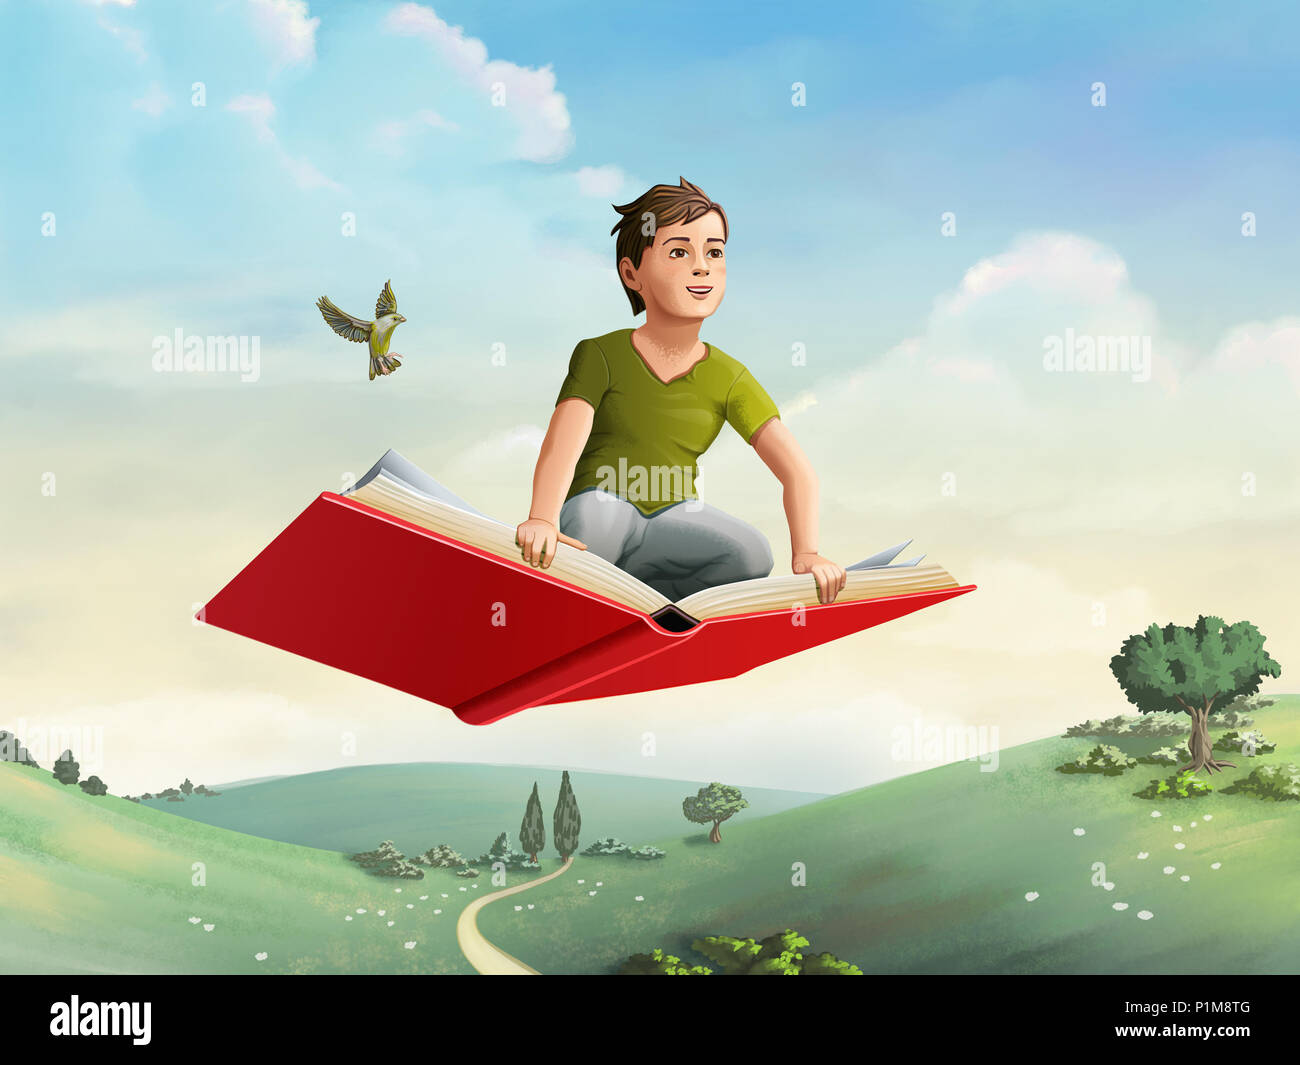 Kinder fliegen auf ein offenes Buch durch eine ländliche Umgebung. Digitale Illustration. Stockfoto